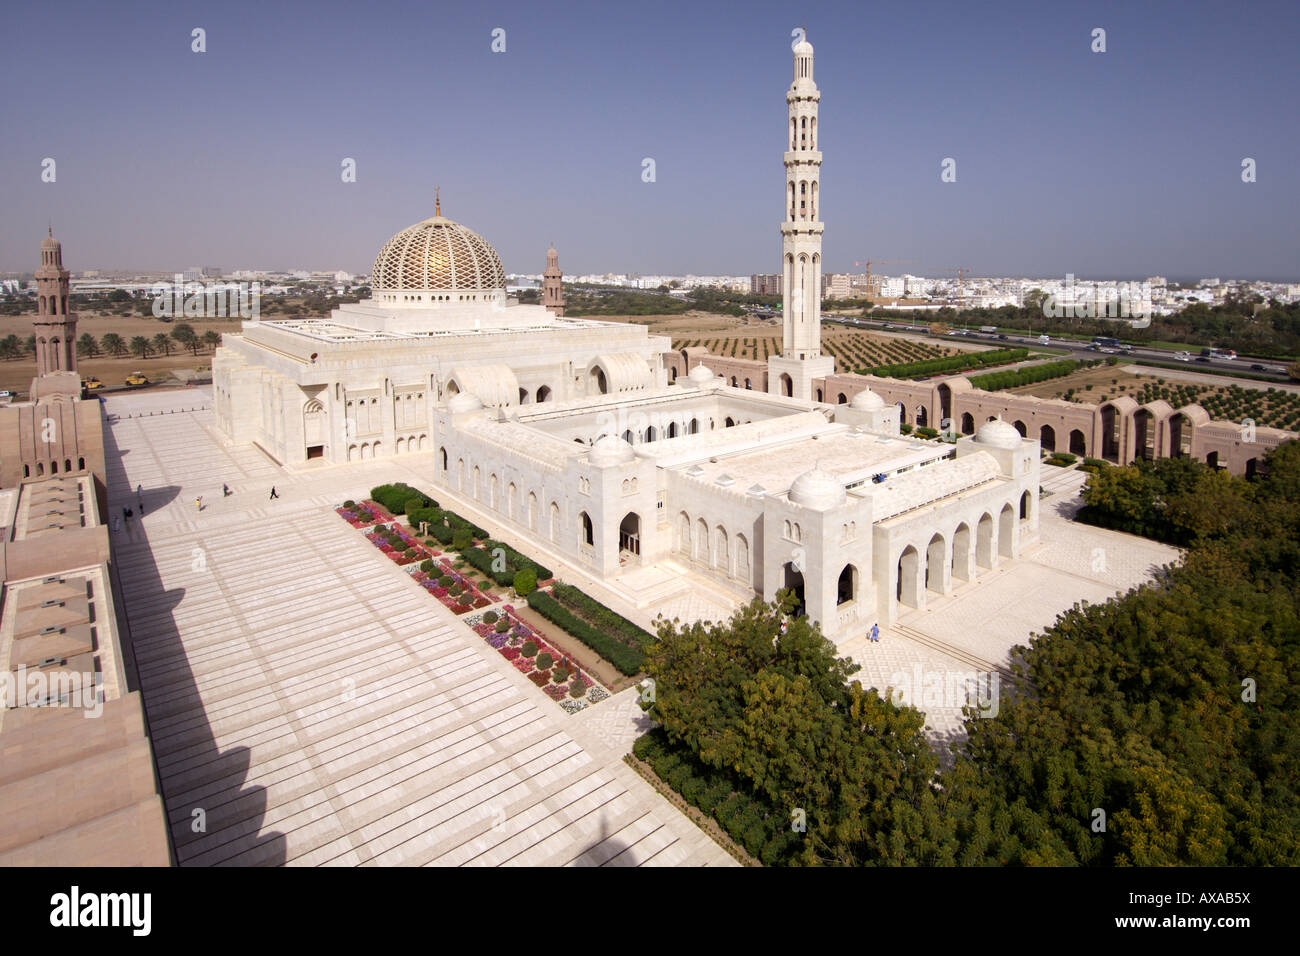 Il sultano Qaboos grande moschea di Muscat, della capitale di Oman. Foto Stock